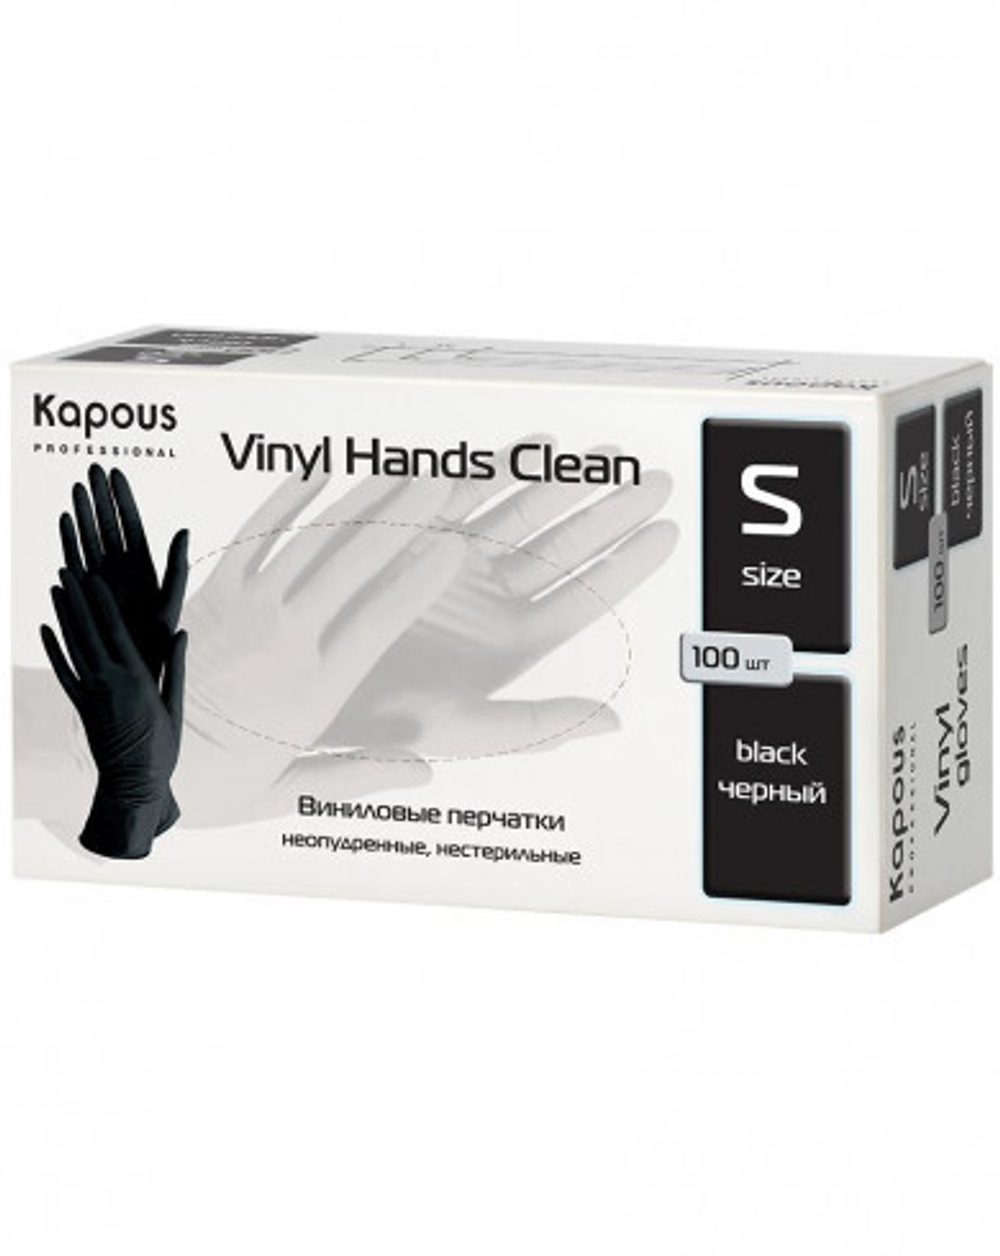 Kapous Professional Перчатки виниловые Vinyl Hands Clean, неопудренные, нестерильные, Черные, S, 100 шт